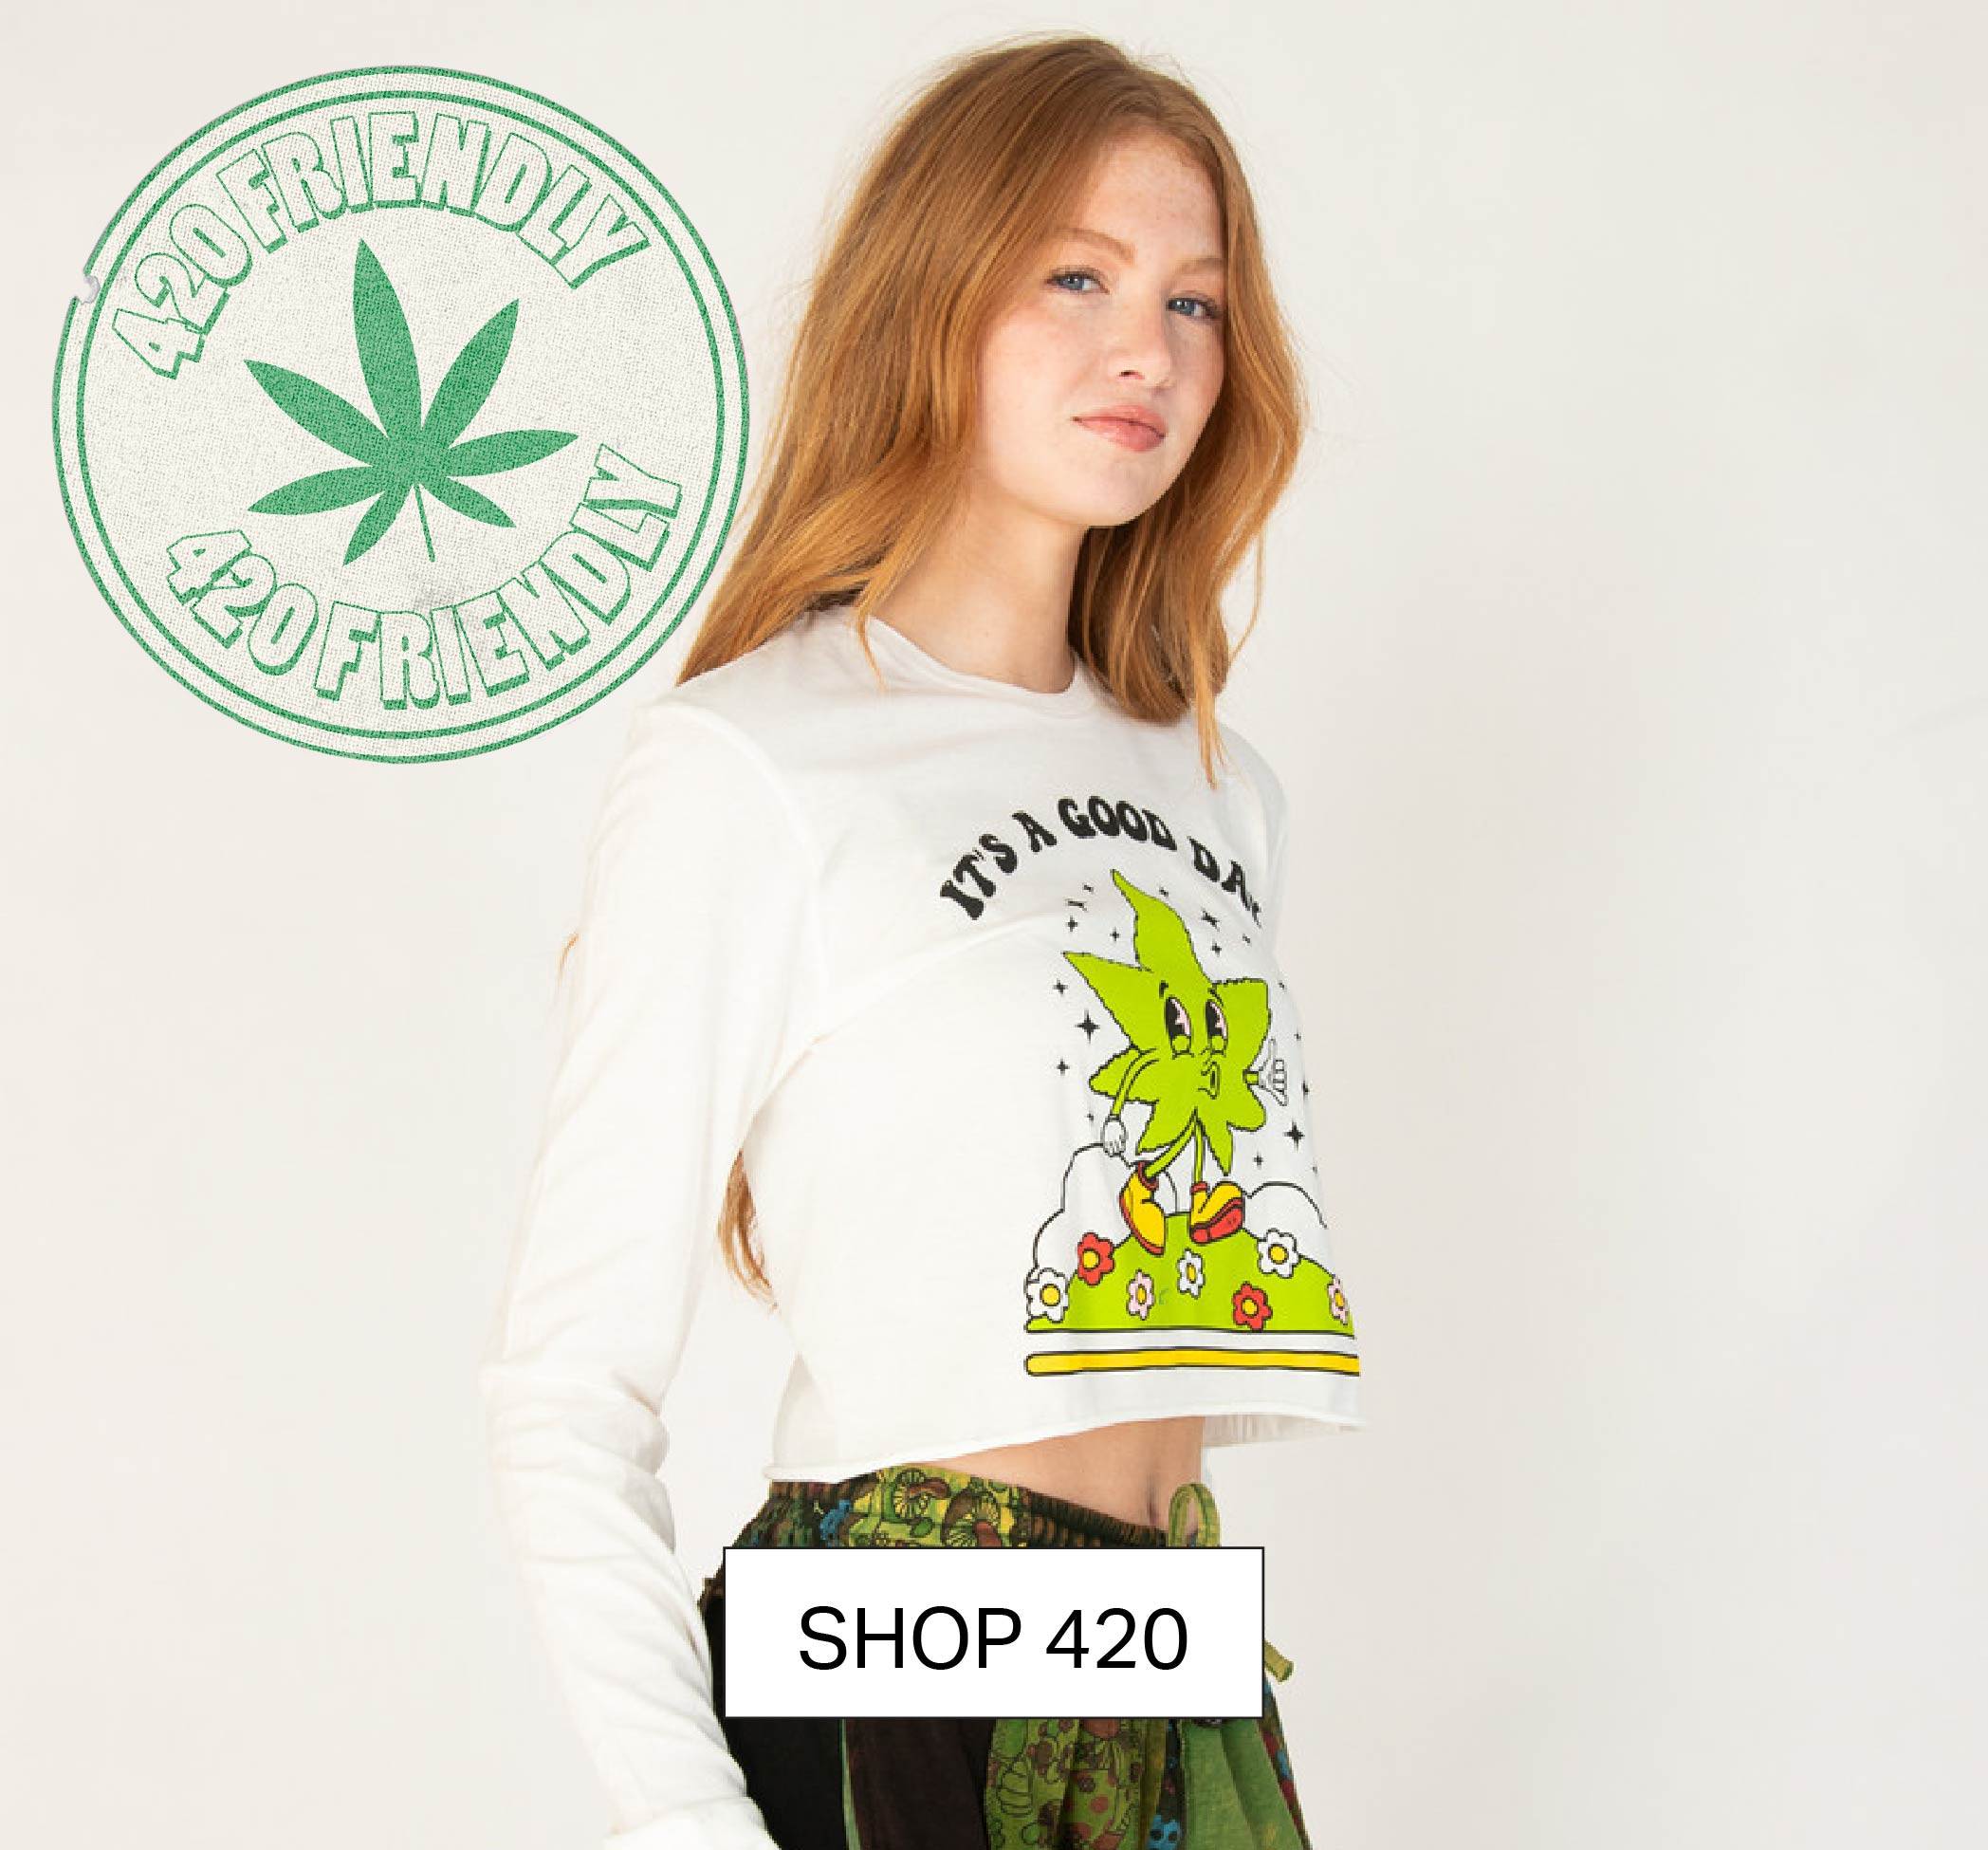 Shop 420